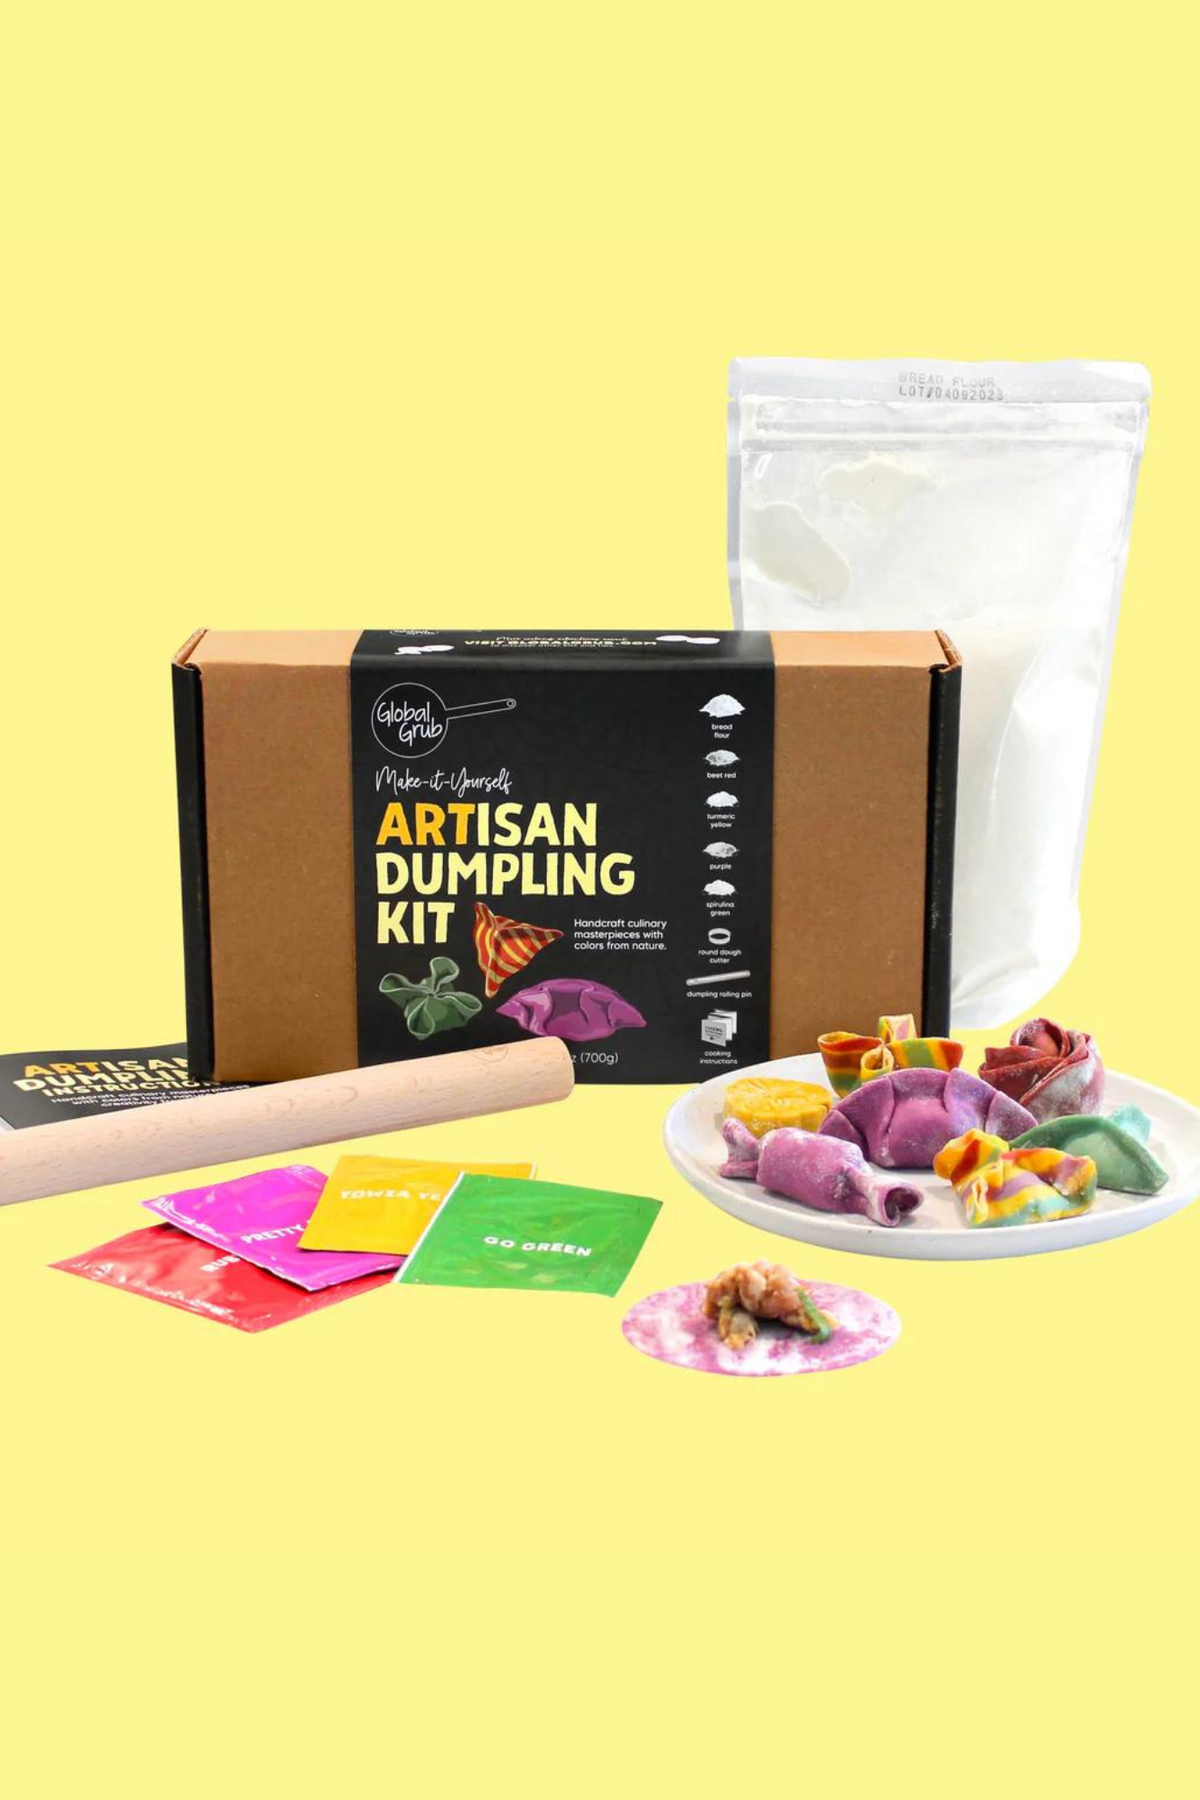 Global Grub ARTisan Dumpling Kit